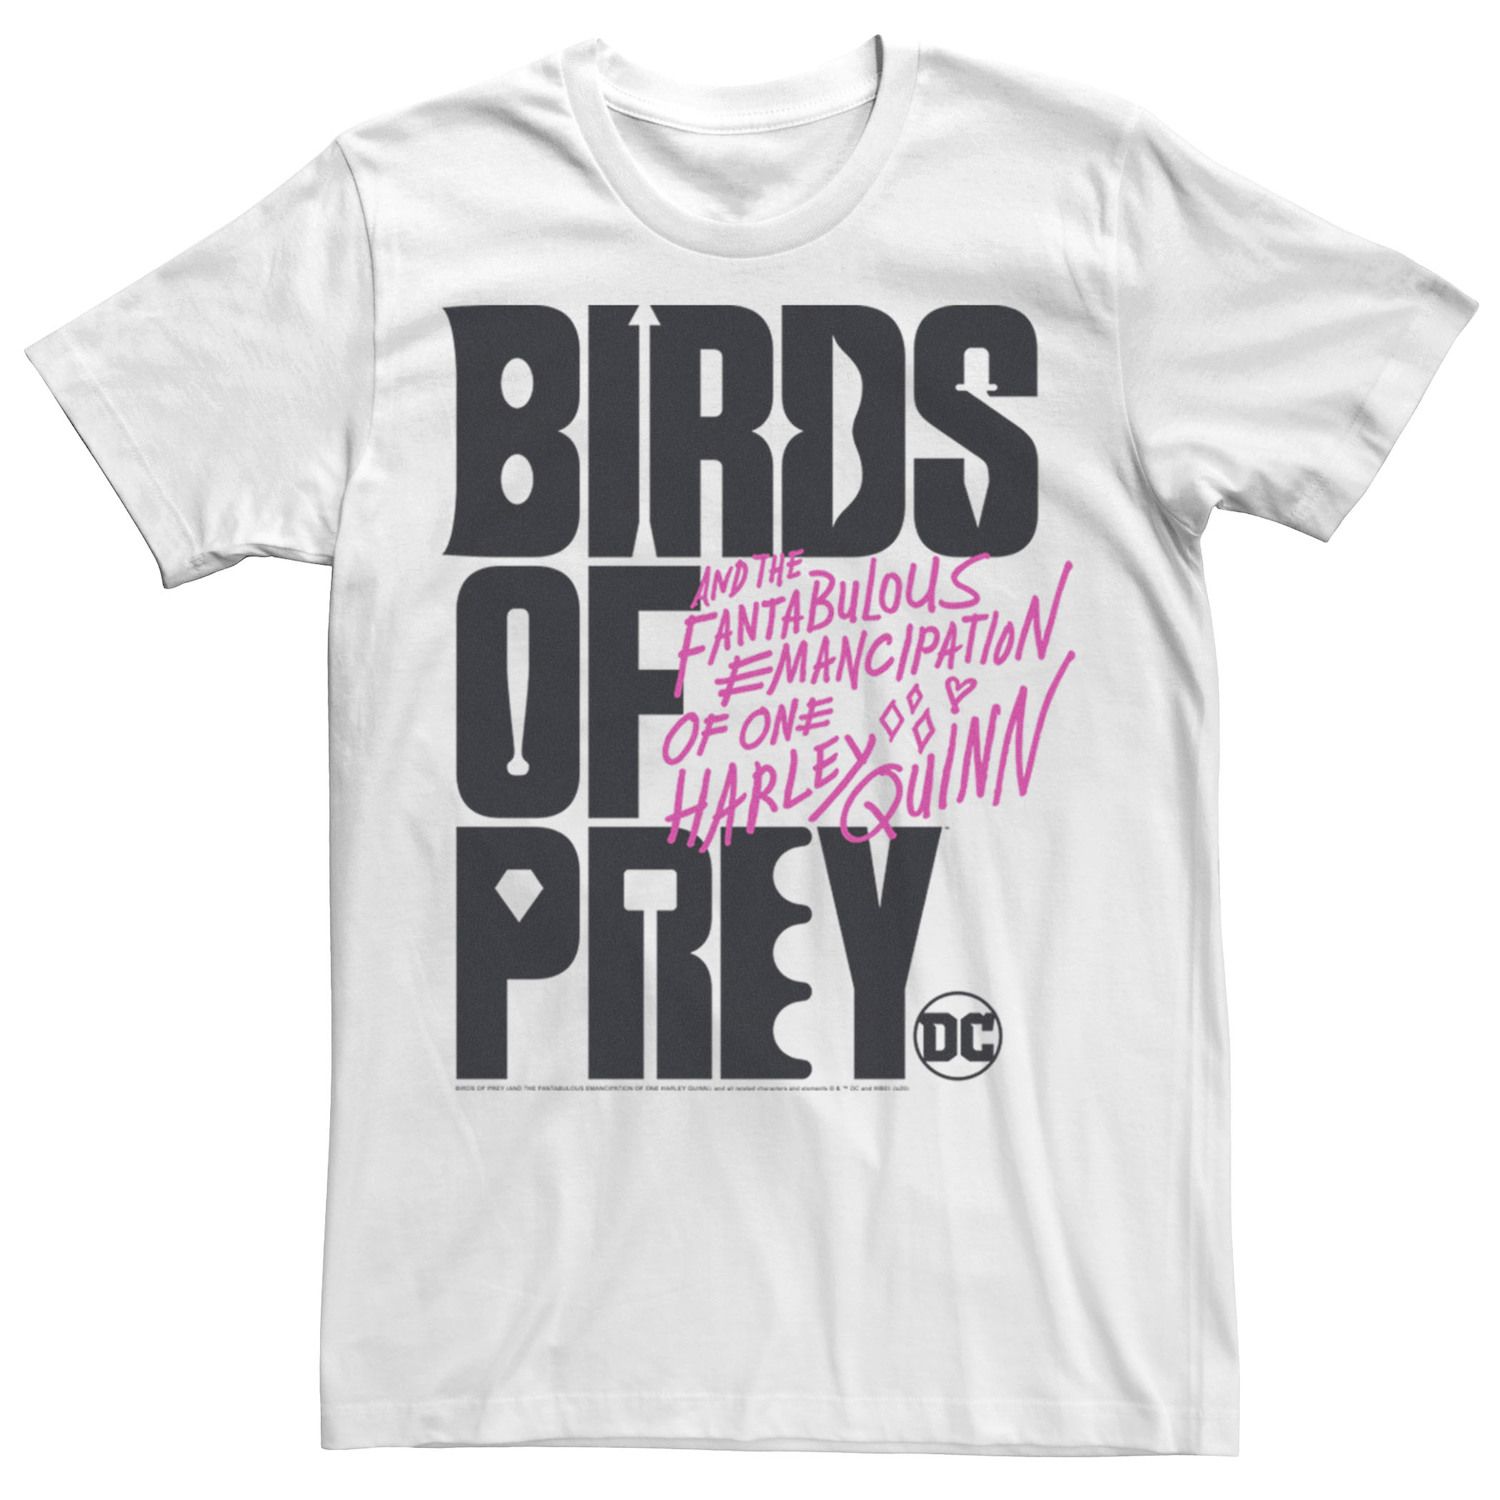 Мужская футболка с текстовым логотипом «Хищные птицы» DC Comics приор групп наклейка патч для одежды dc хищные птицы – 2